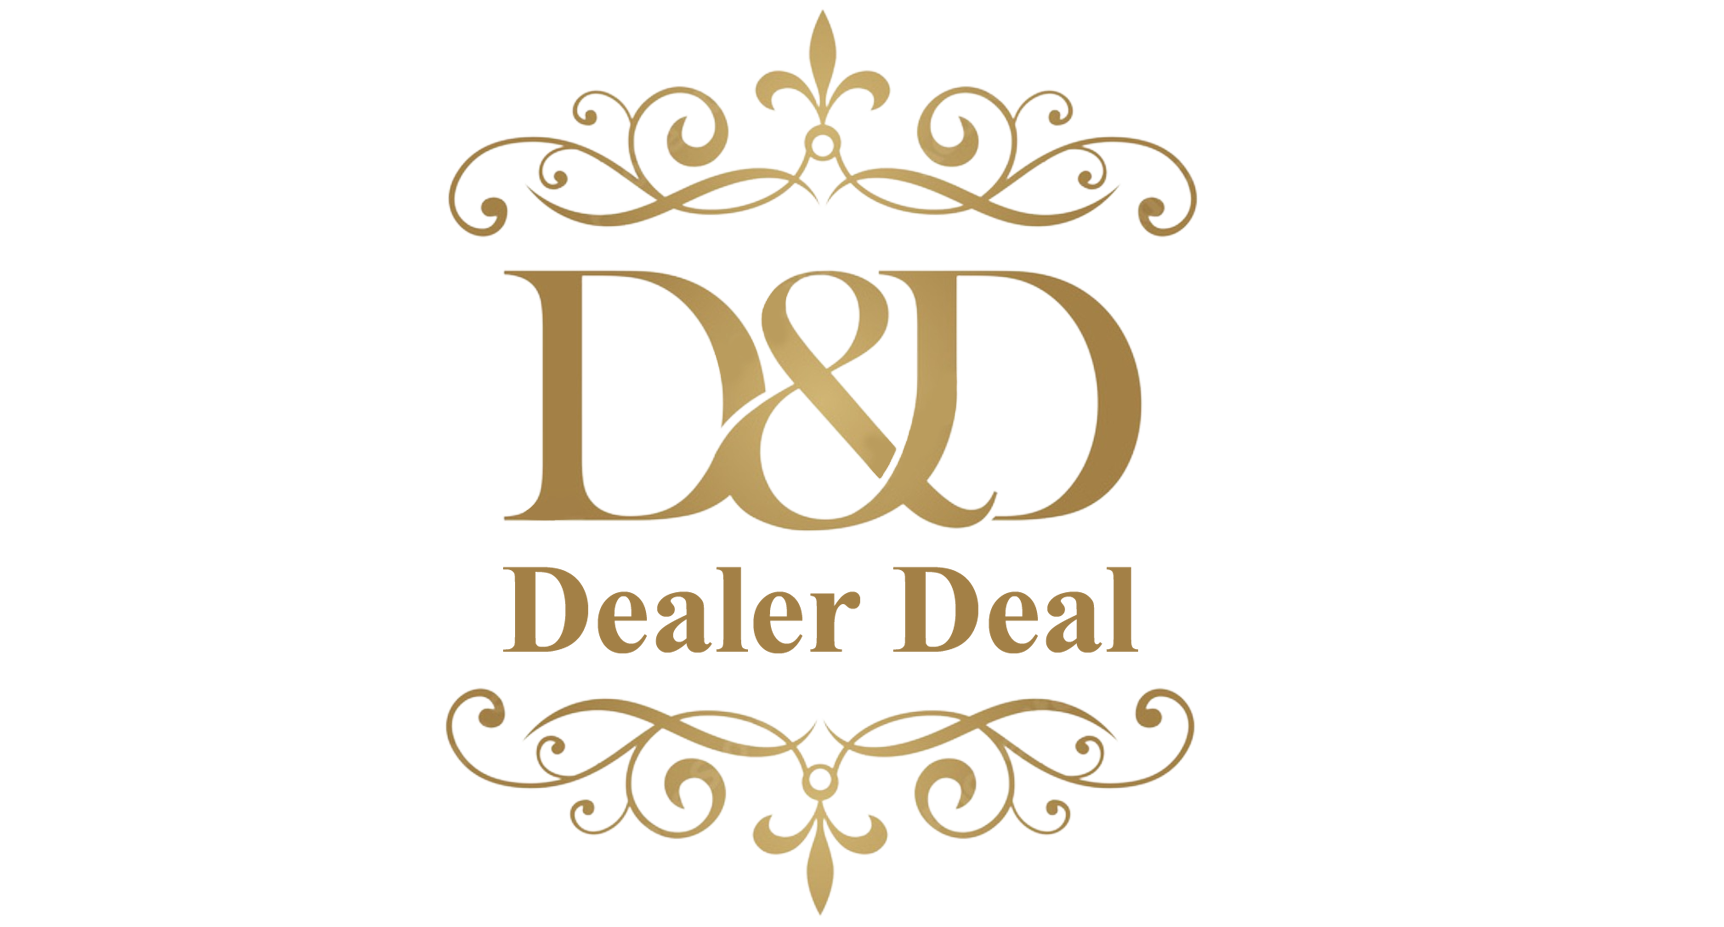 Dealer Deal